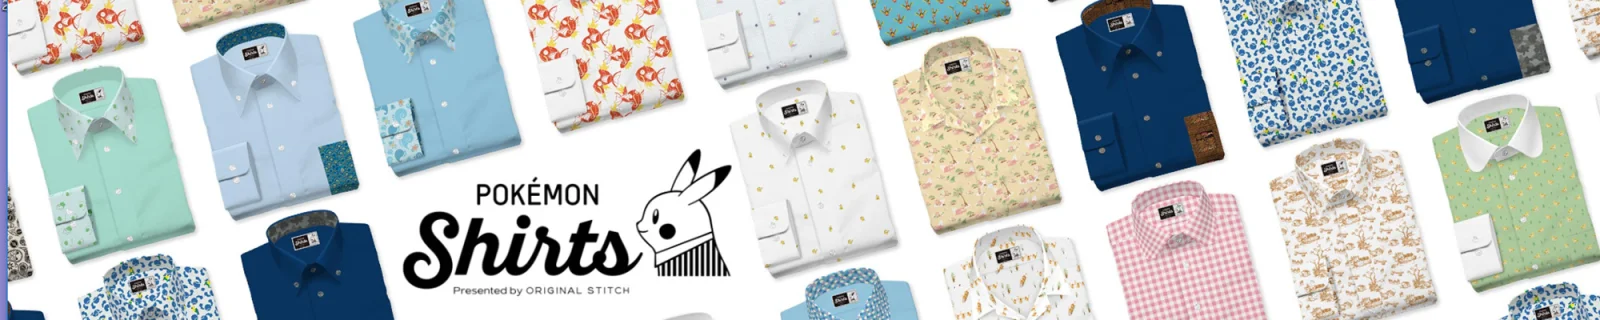 宝可梦有自己的服装品牌了，Pokémon Shirts 正式登场